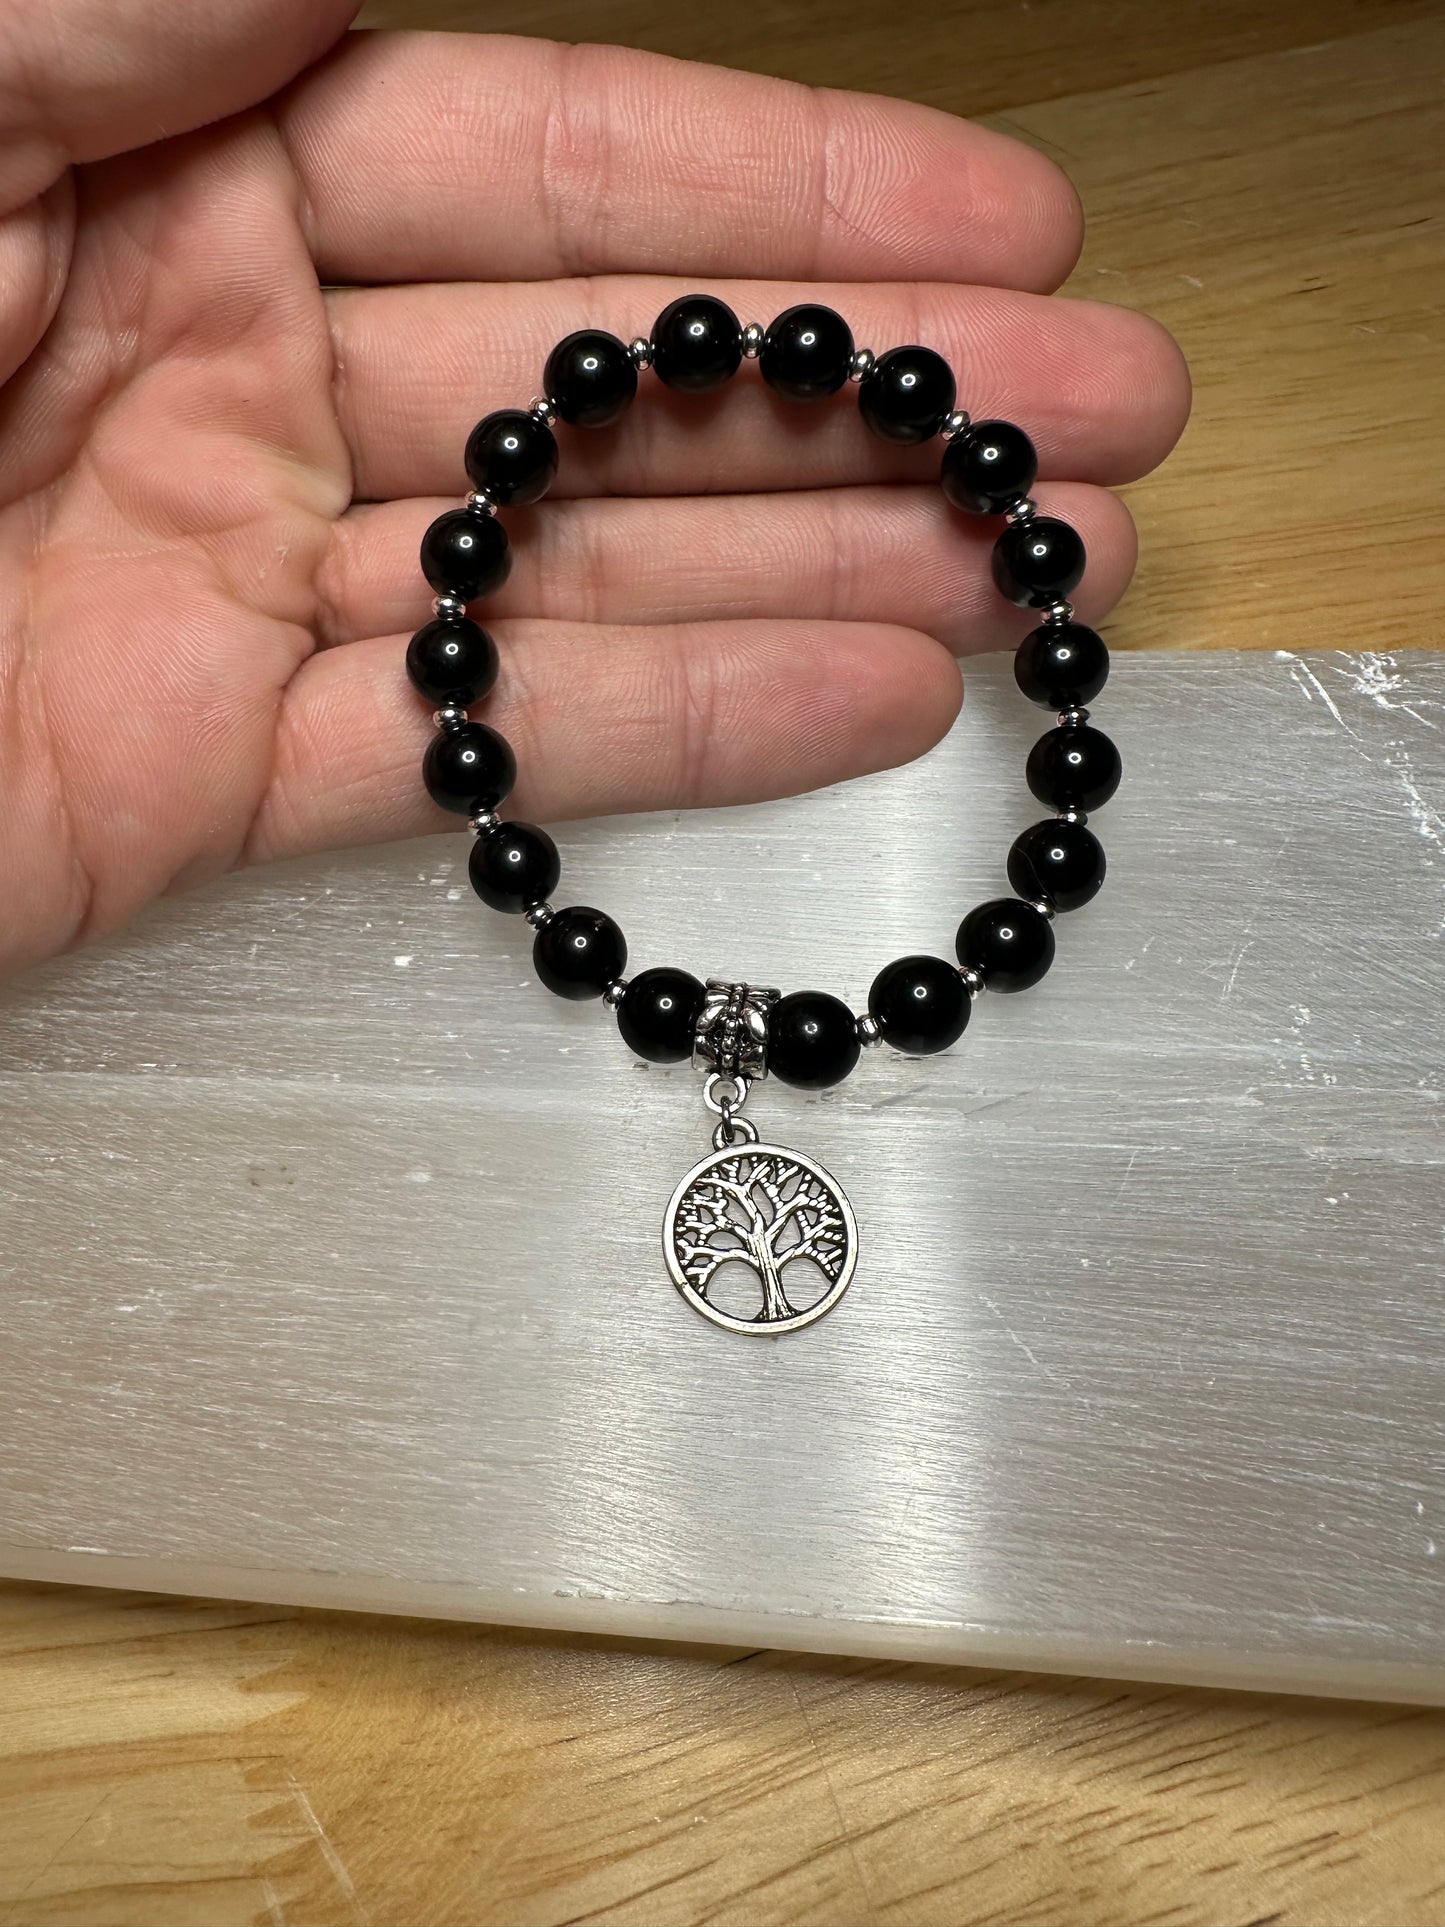 Black Obsidian bracelet w/ Tree Of Life Charm